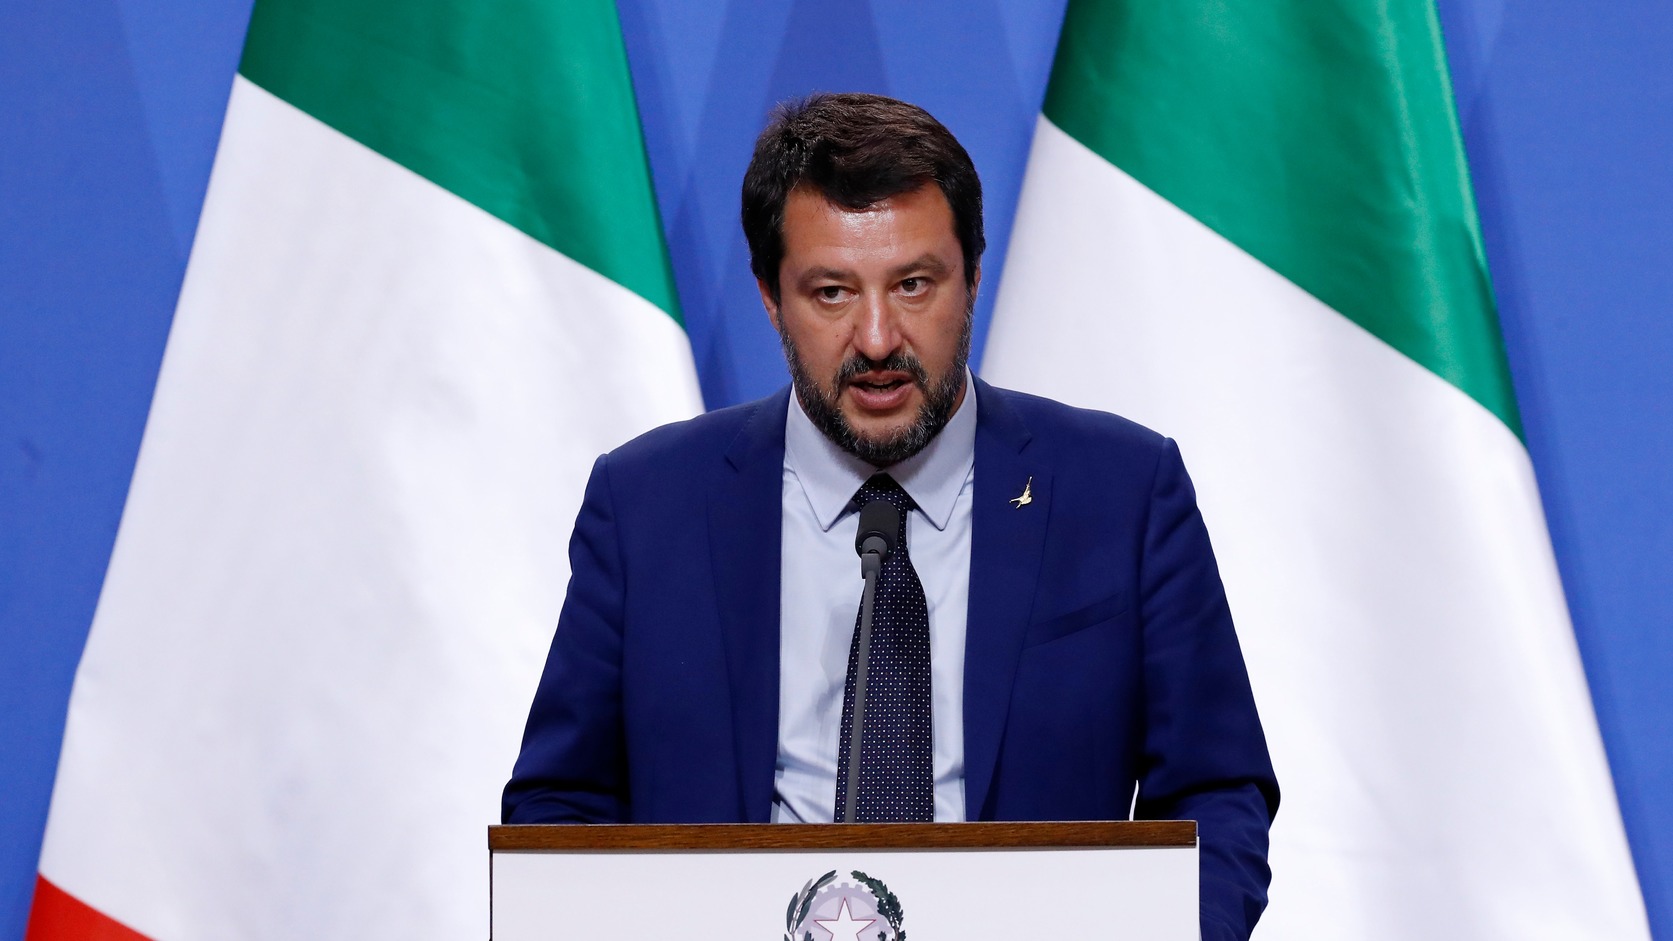 Salvini a magyar családpolitikát dicsérte